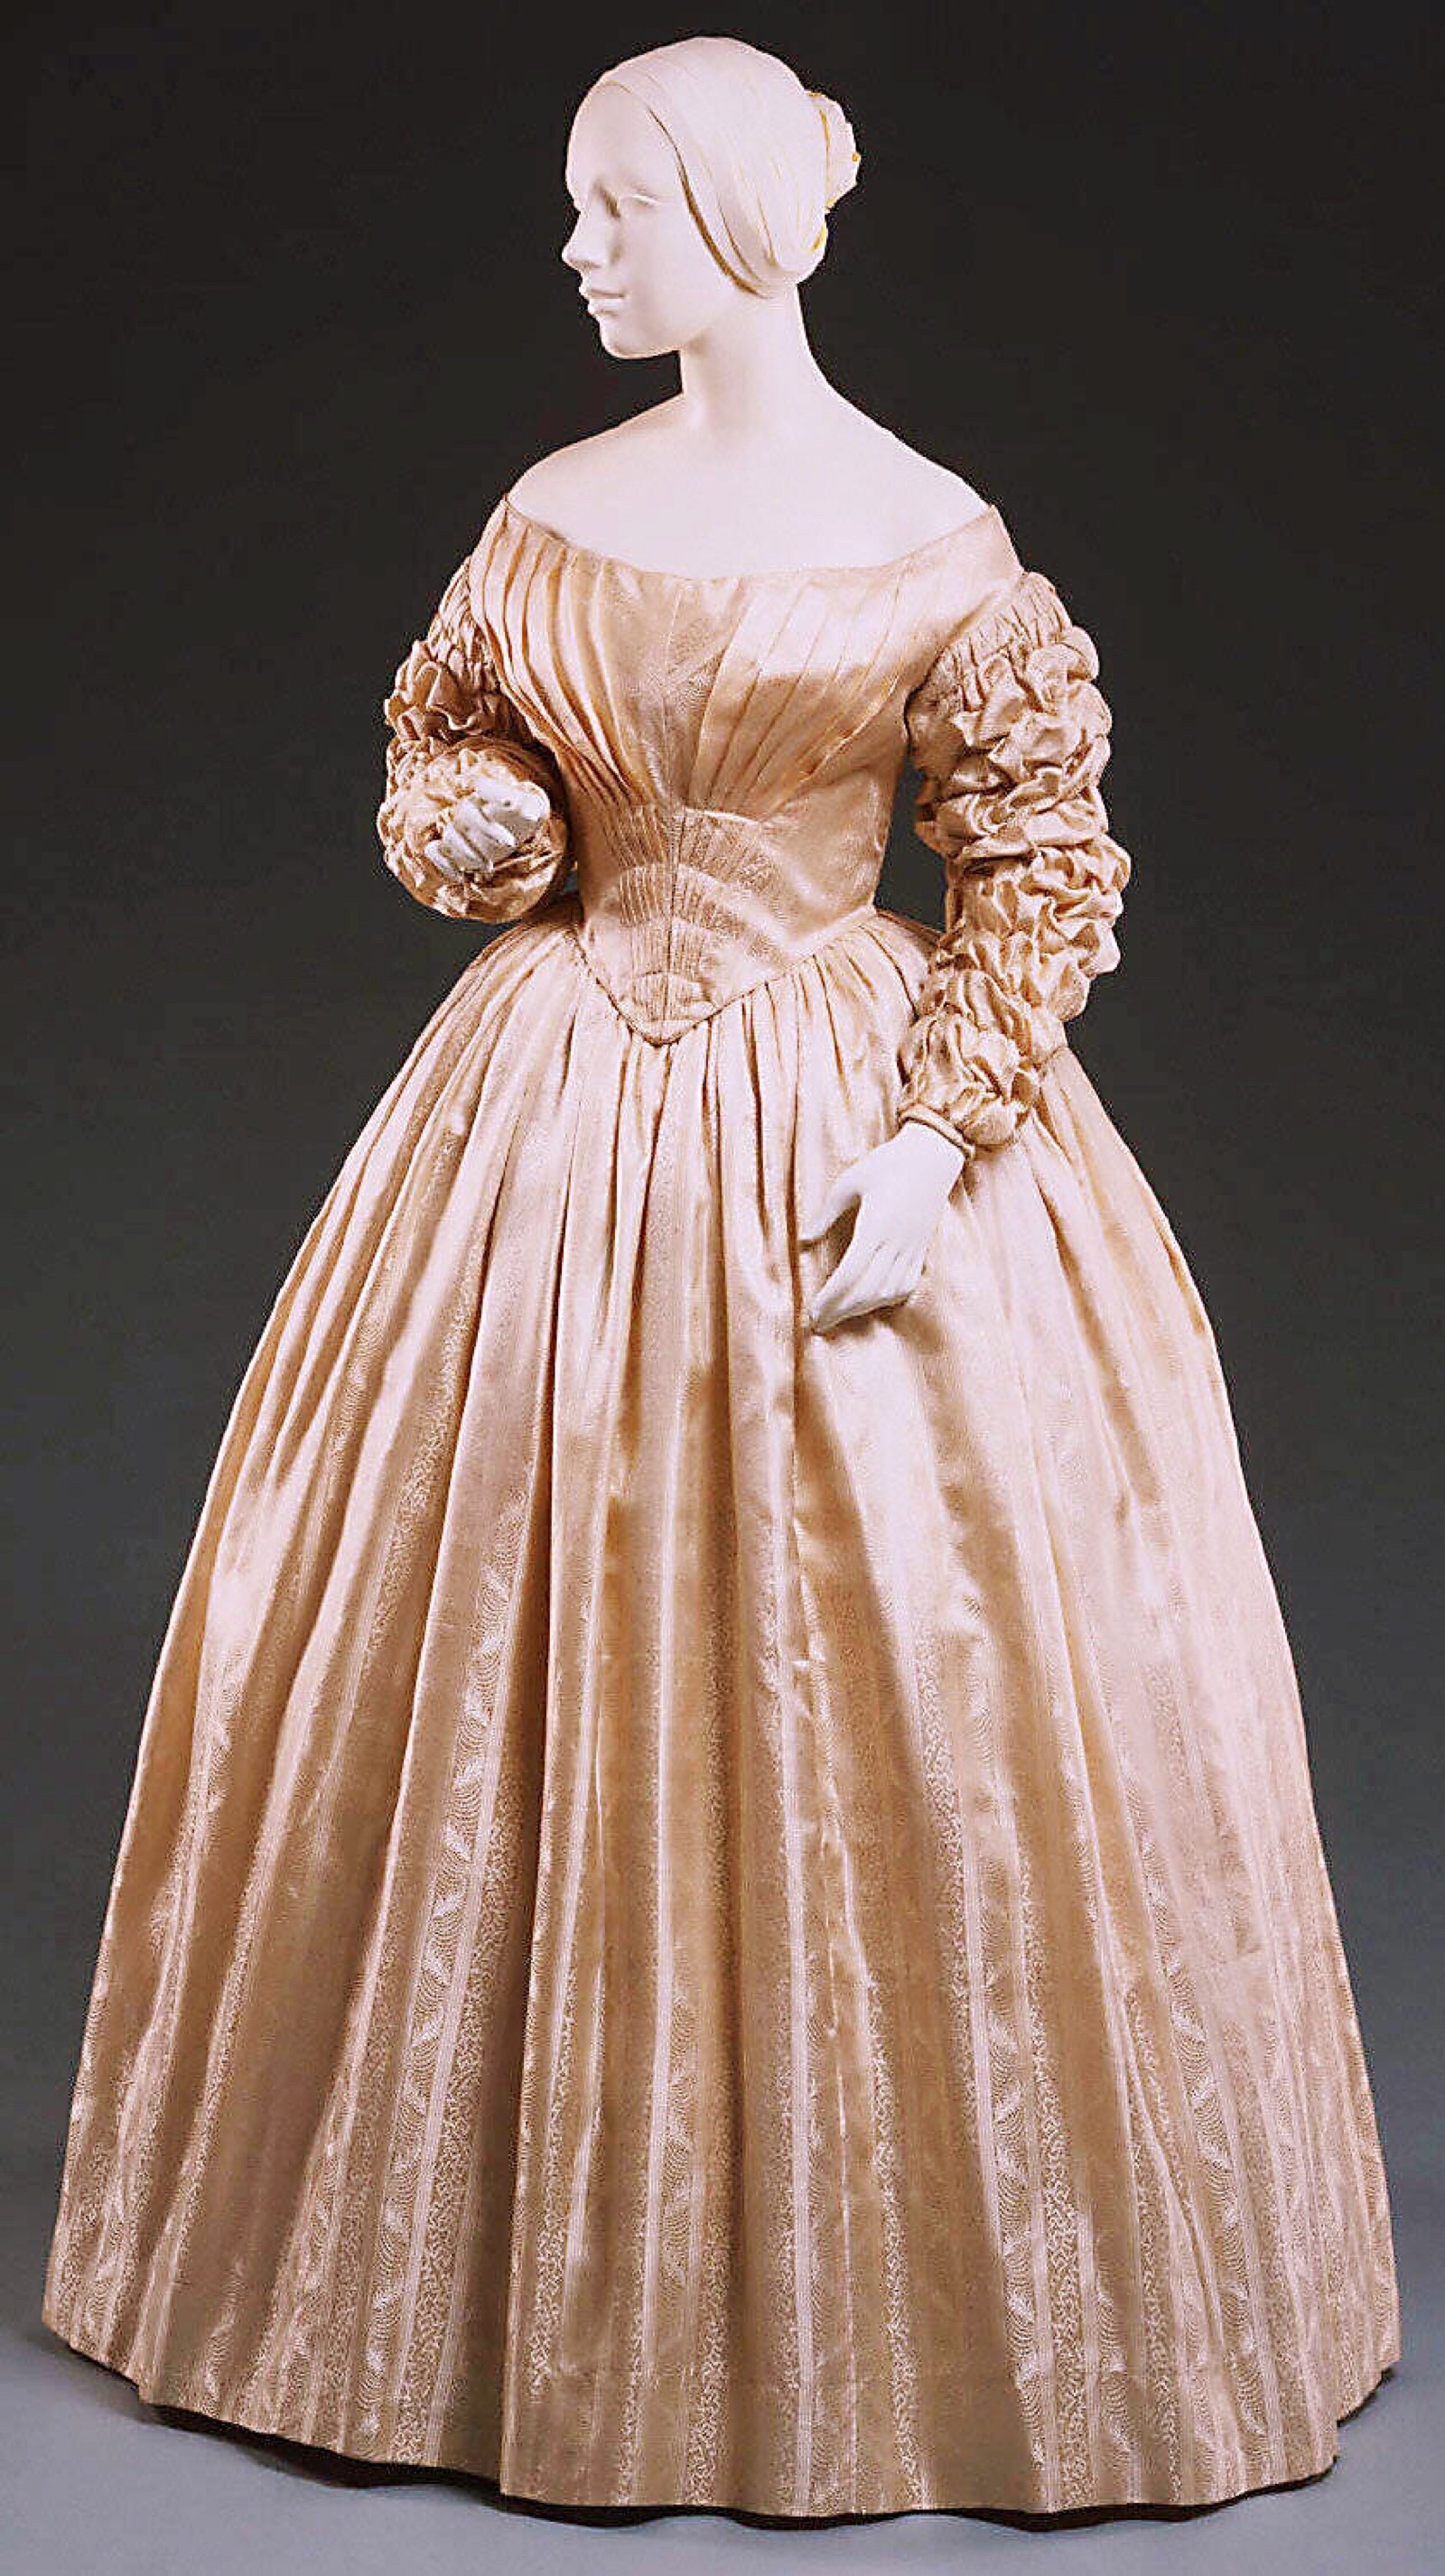 维多利亚时代前半的古董衣服,均是比较简洁质朴的